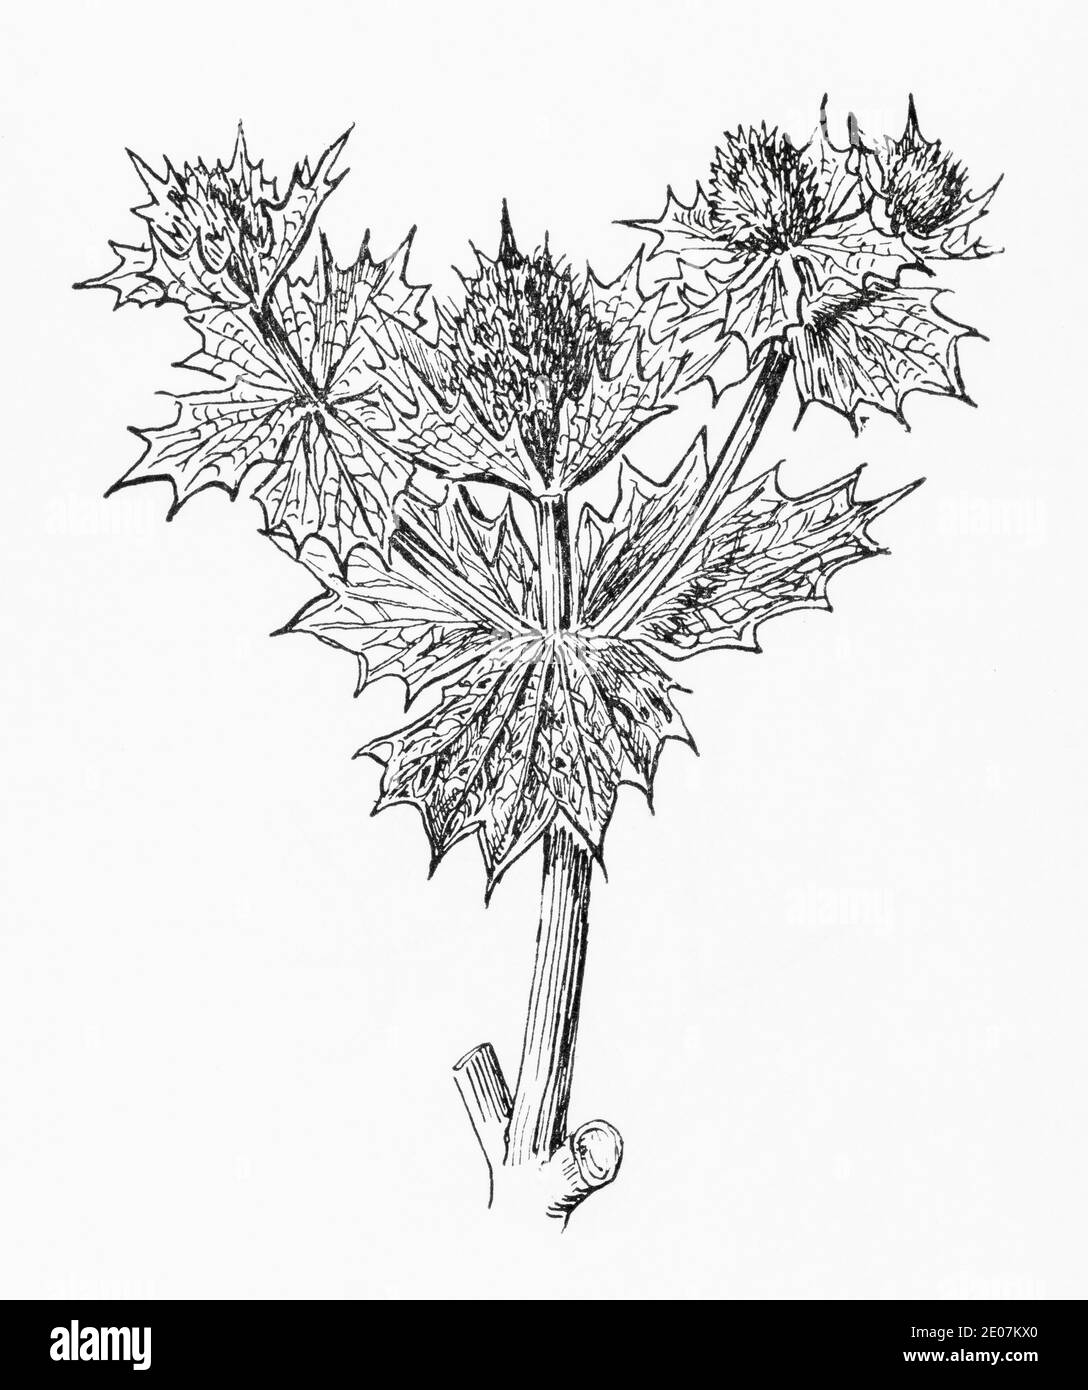 Ancienne gravure d'illustration botanique de Sea Holly / Eryngium maritimum. Dessins de umbellives britanniques. Plante médicinale traditionnelle. Voir Remarques Banque D'Images